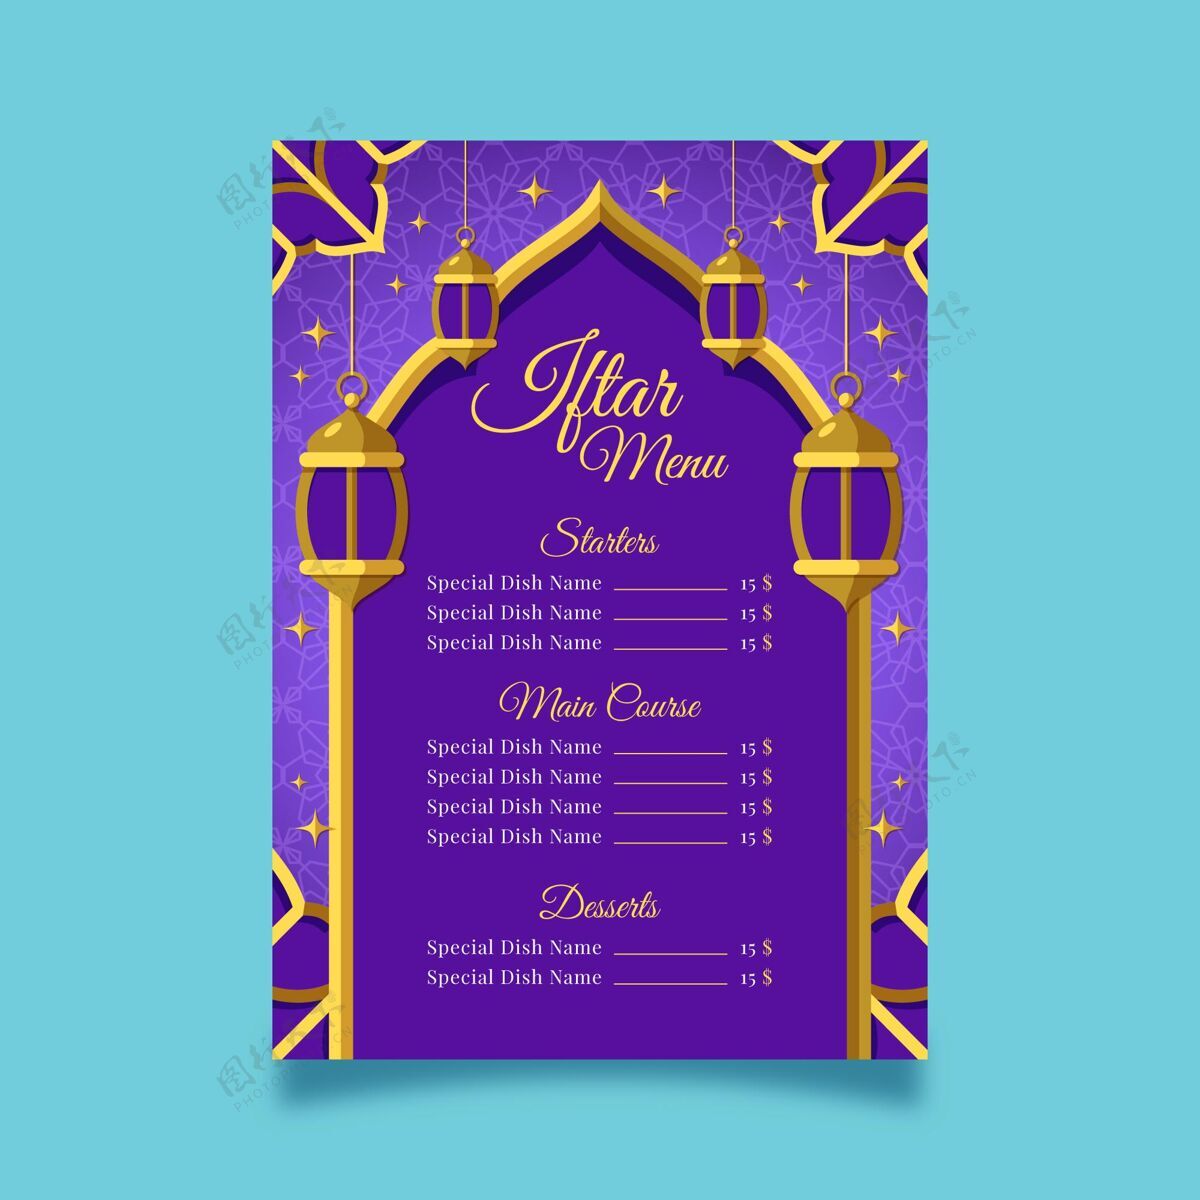 准备印刷开斋节菜单模板膳食平面设计Maghrib